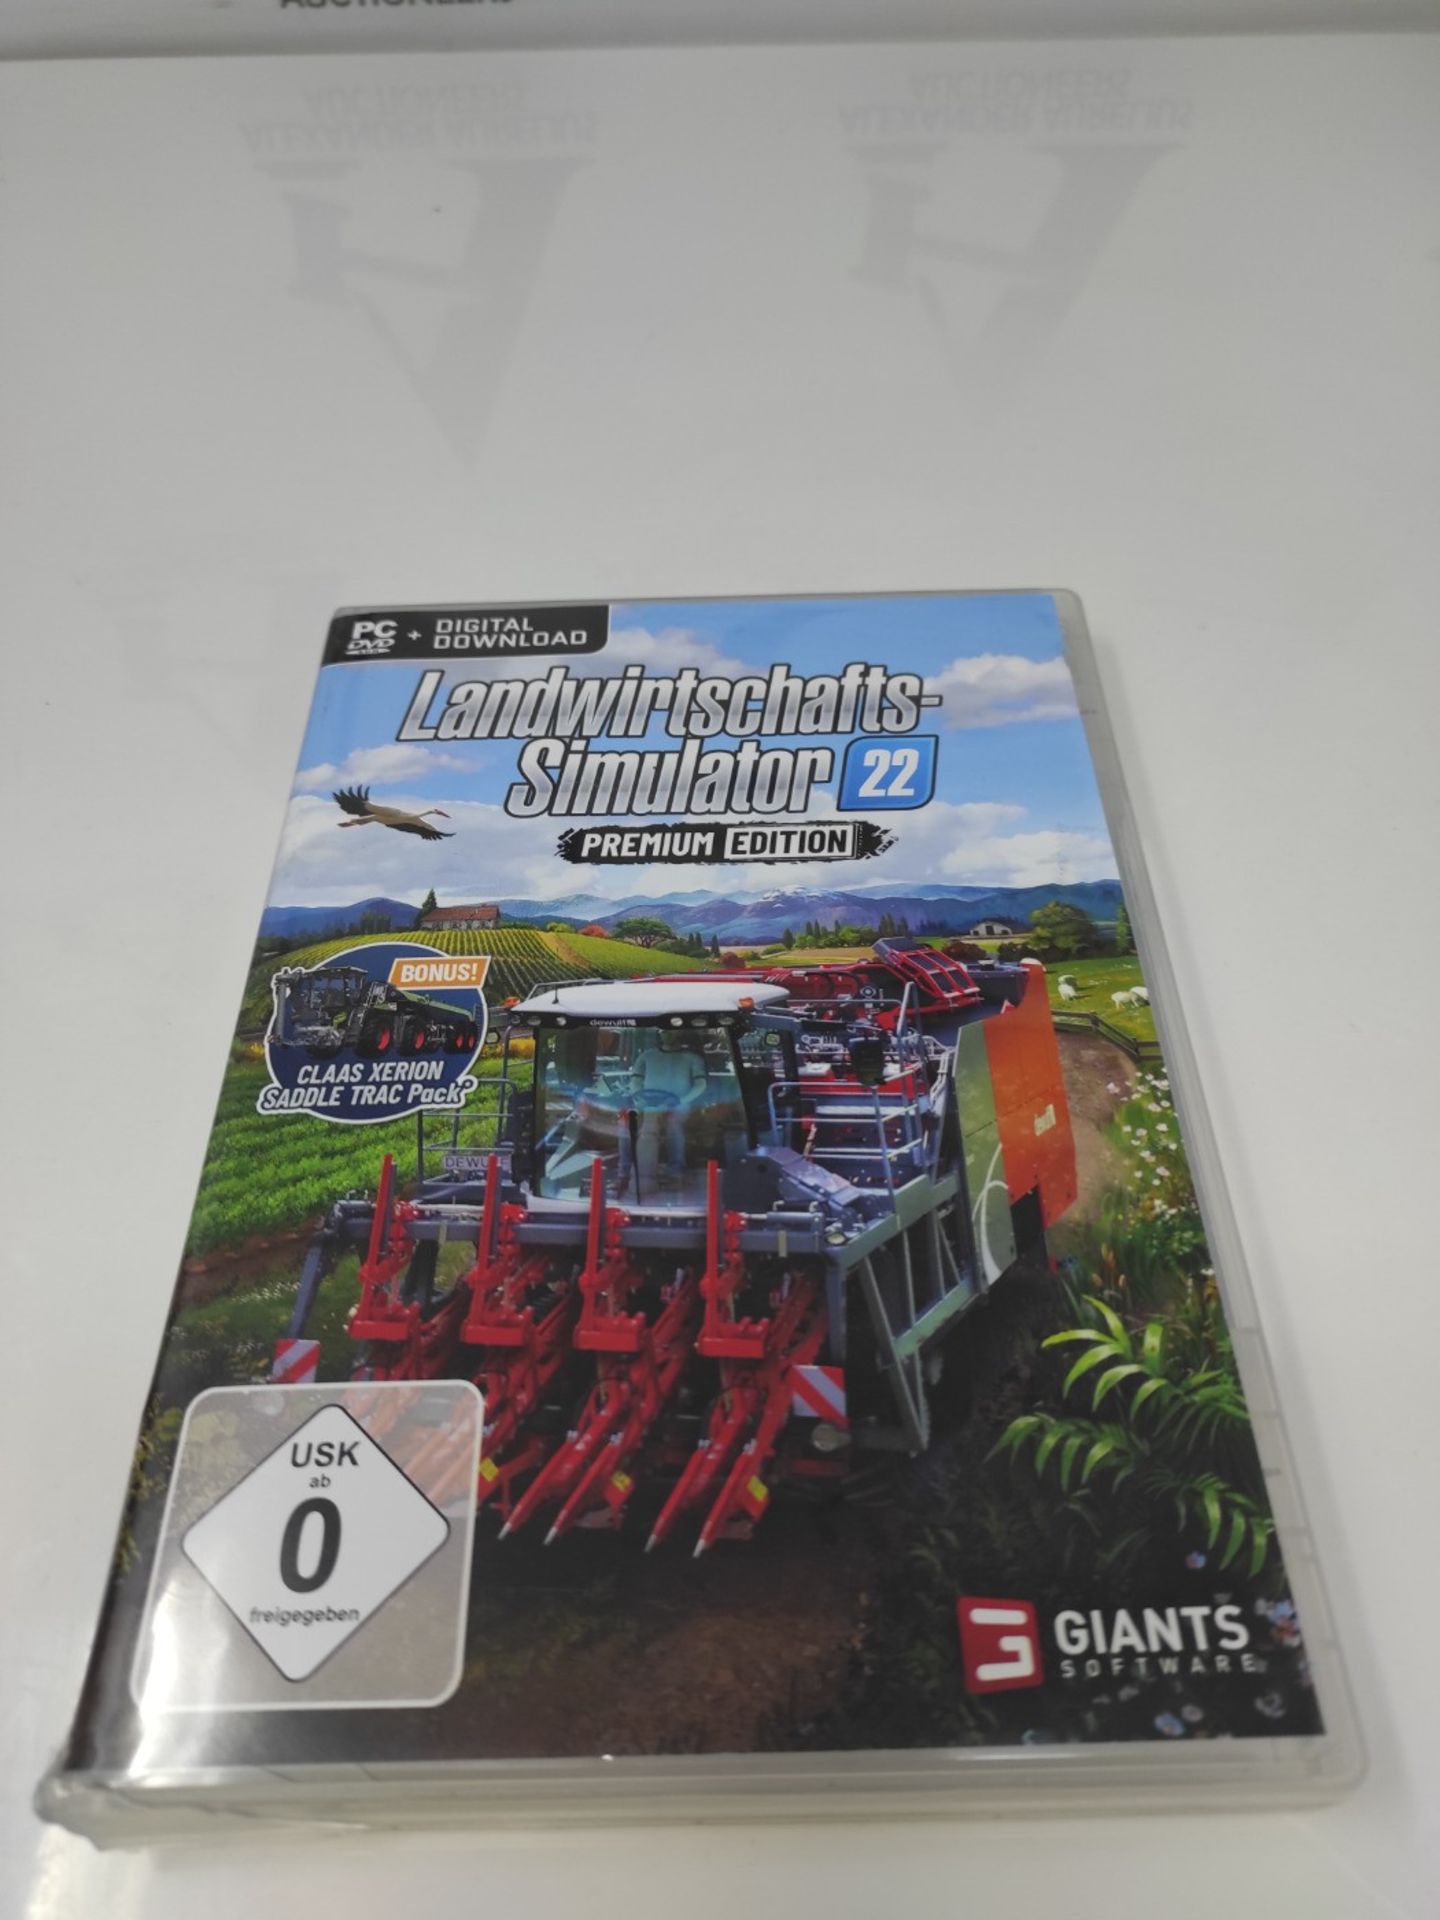 Agricultural Simulator 22: Premium Edition [PC] - Image 2 of 3